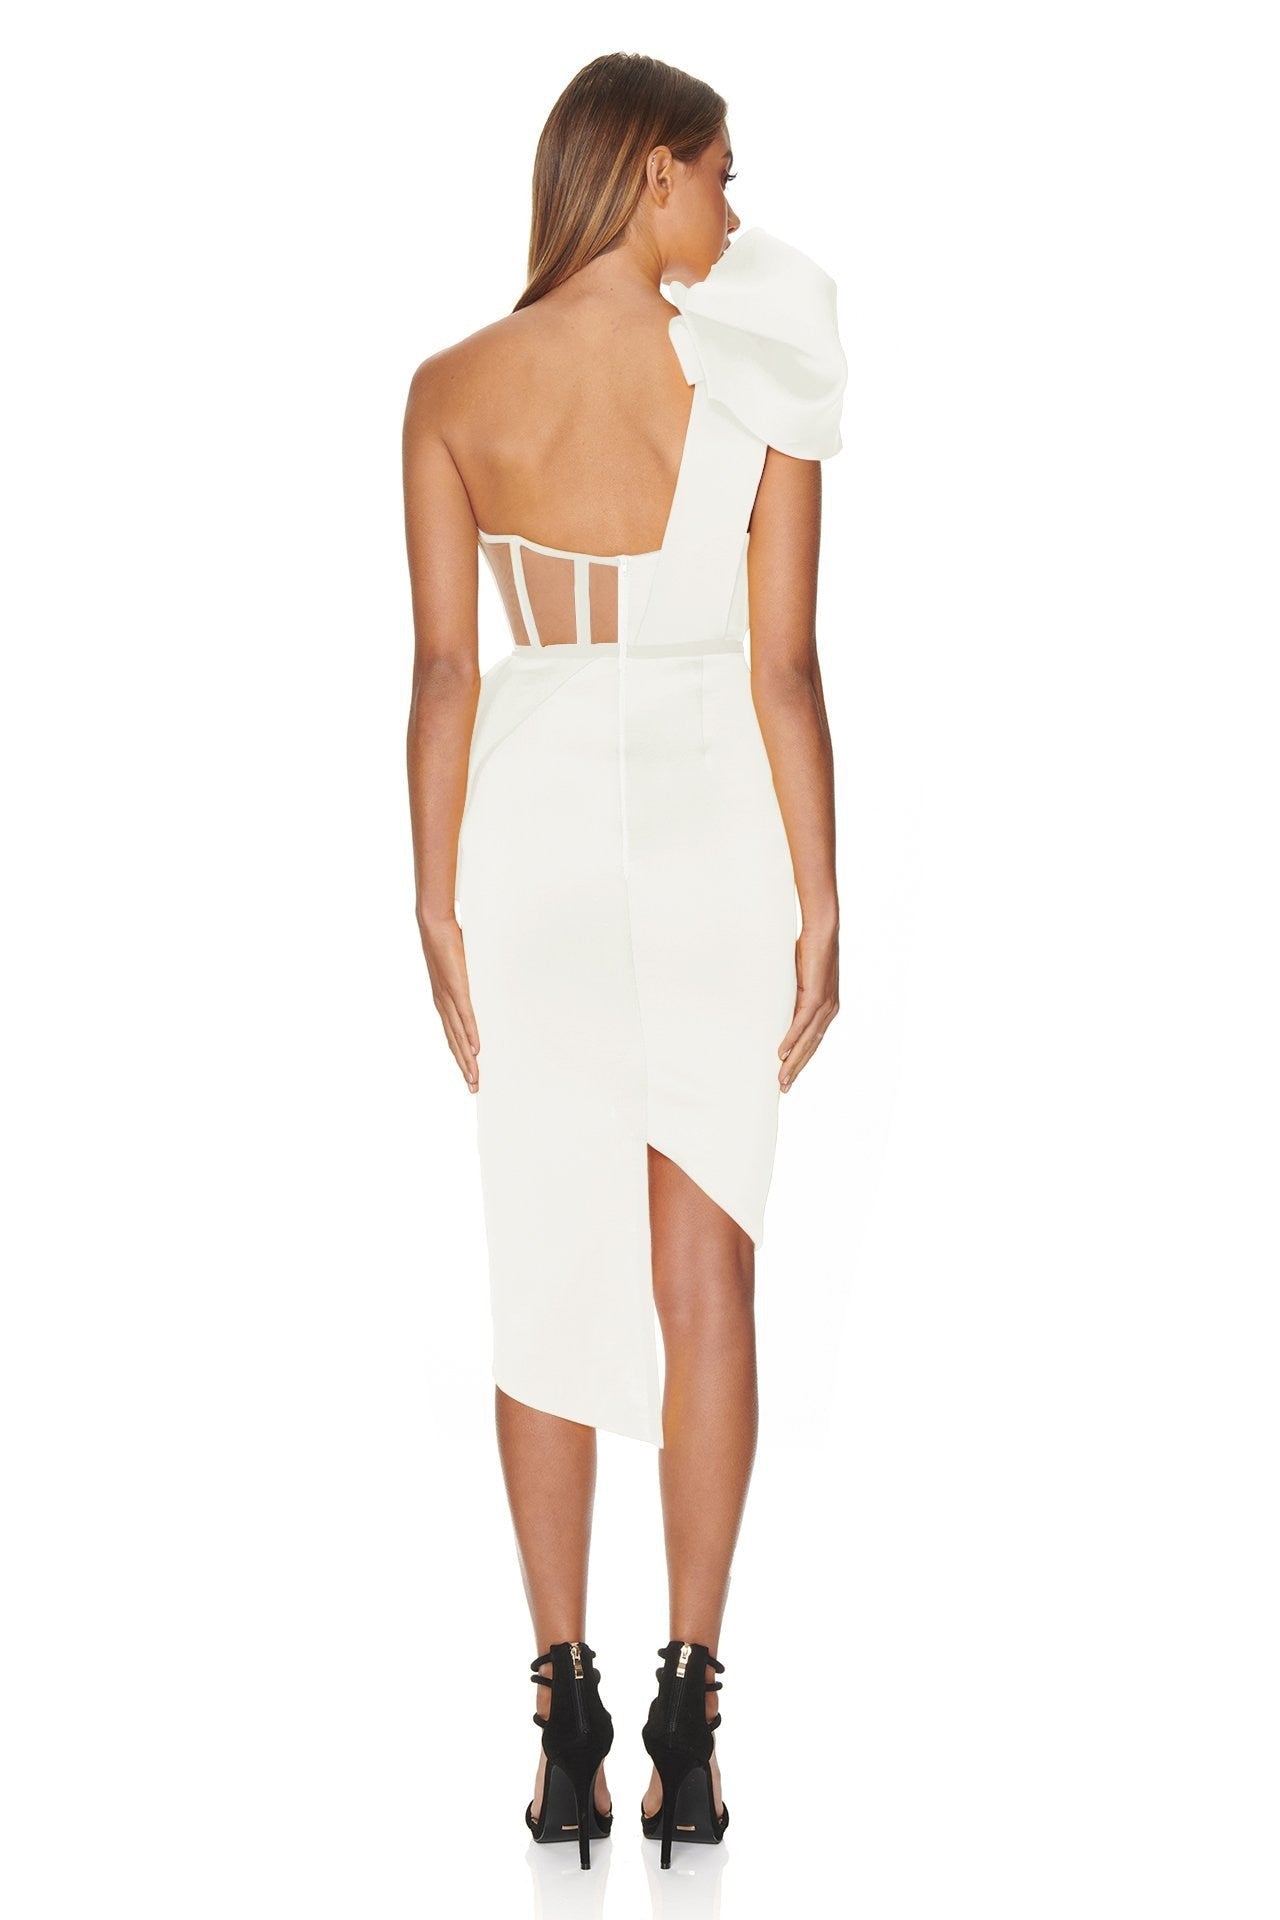 Adelle Bandage Corset-Style One Shoulder Bow Dress